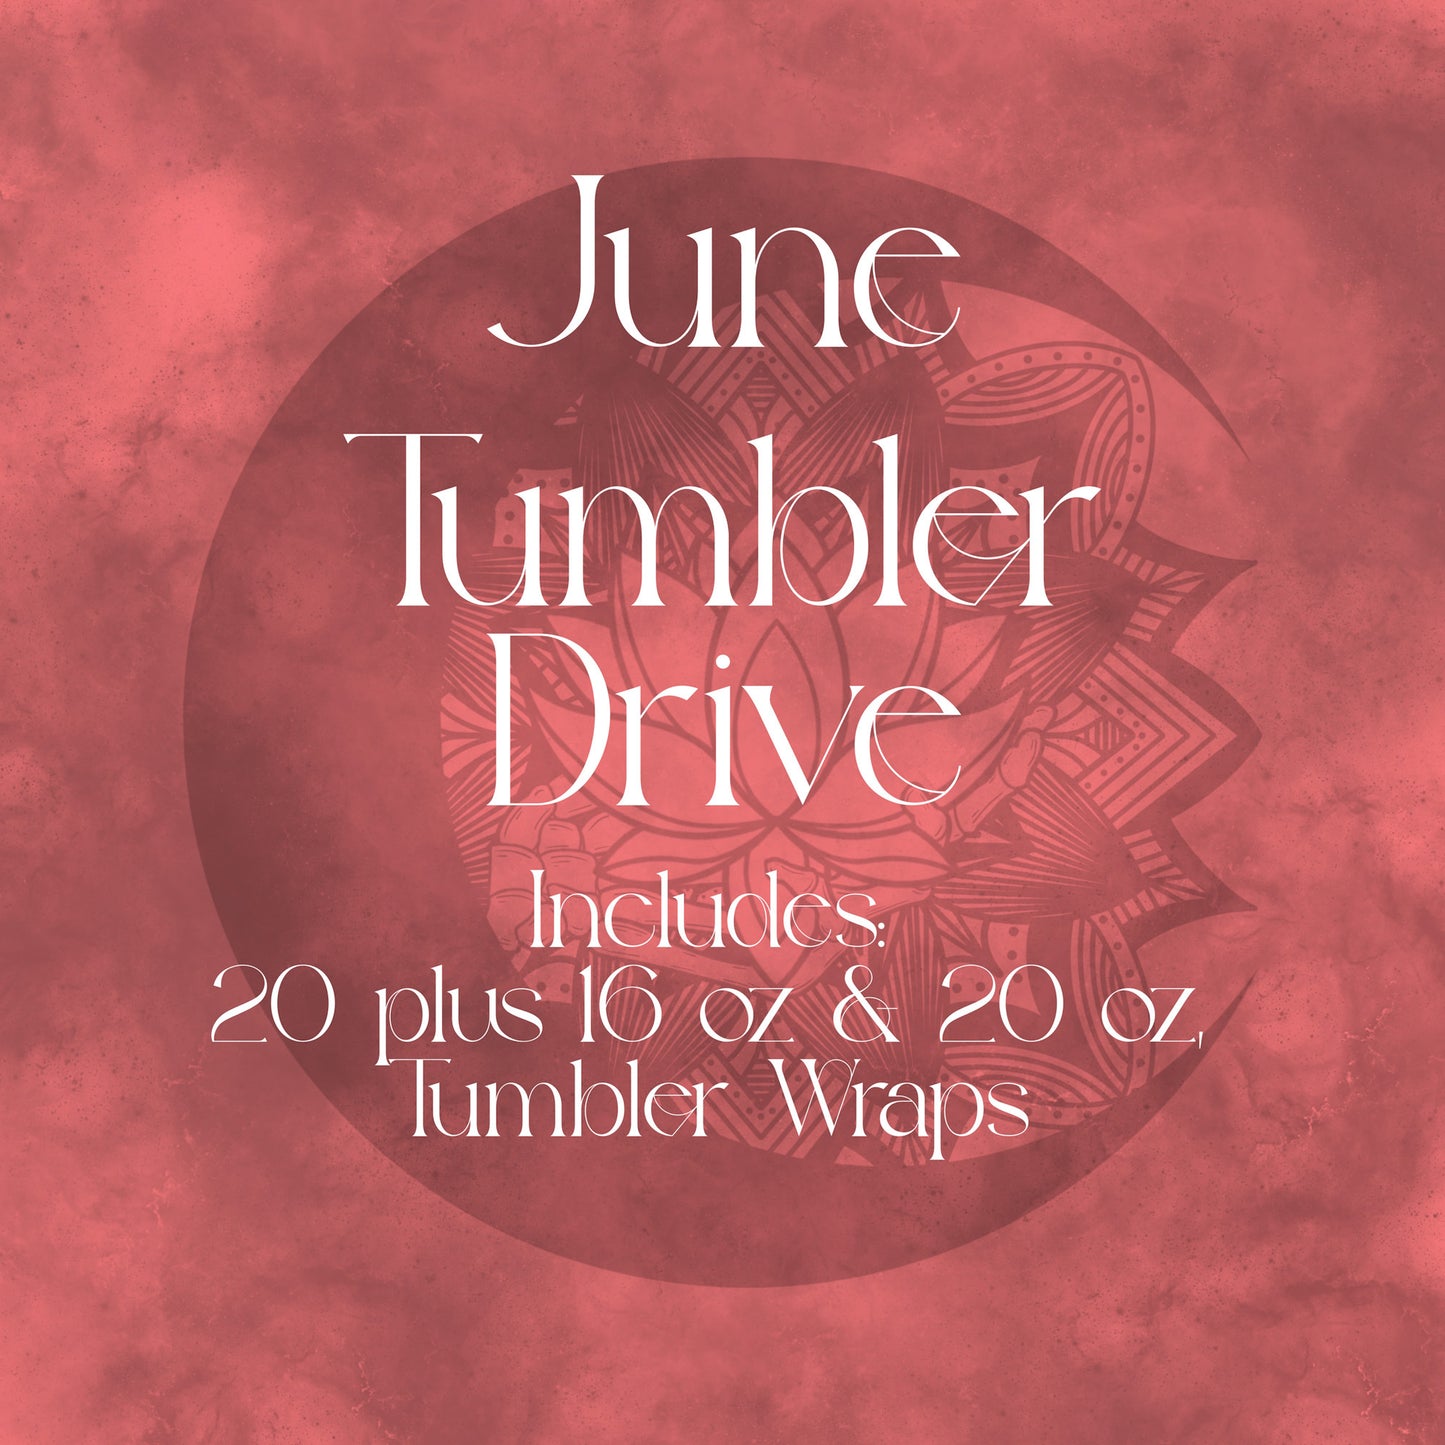 June tumbler Drive